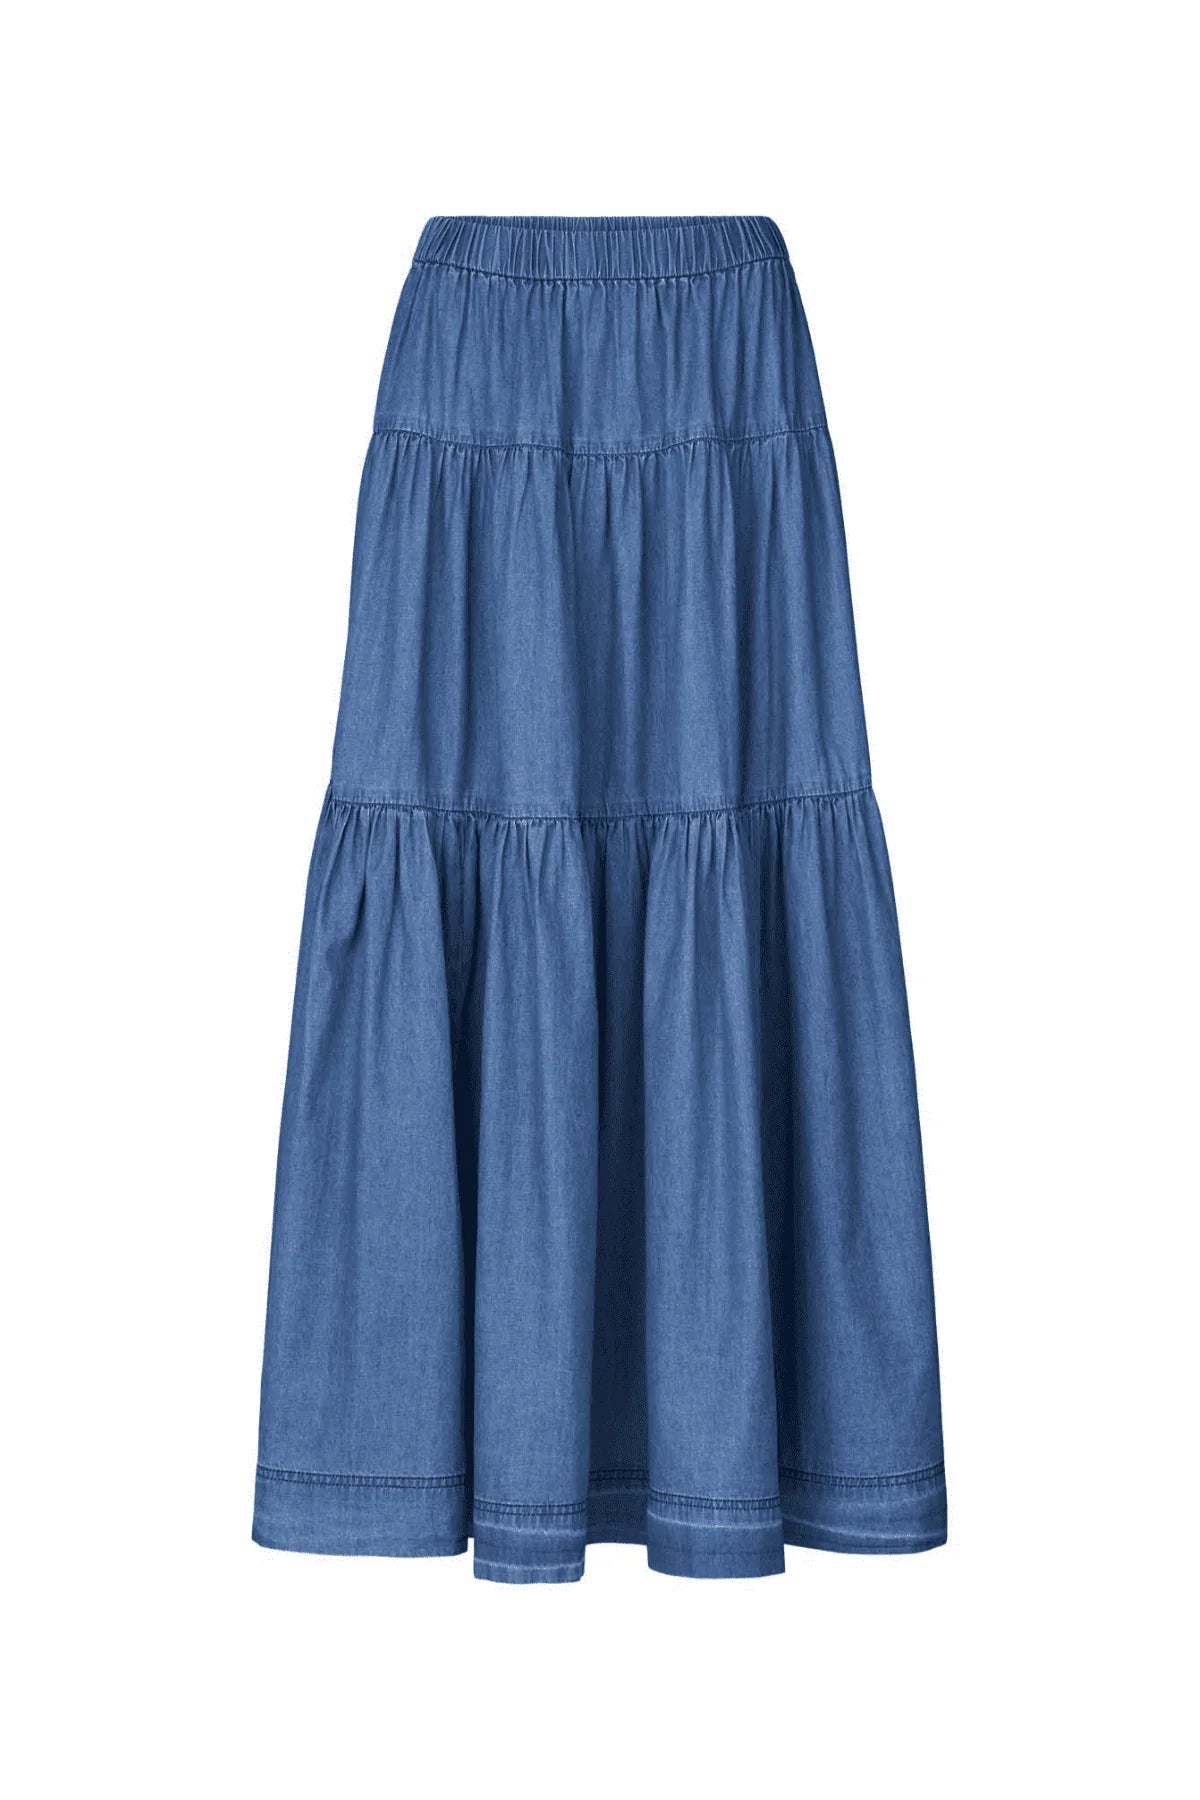 Lollys Laundry Sunset skirt Blue